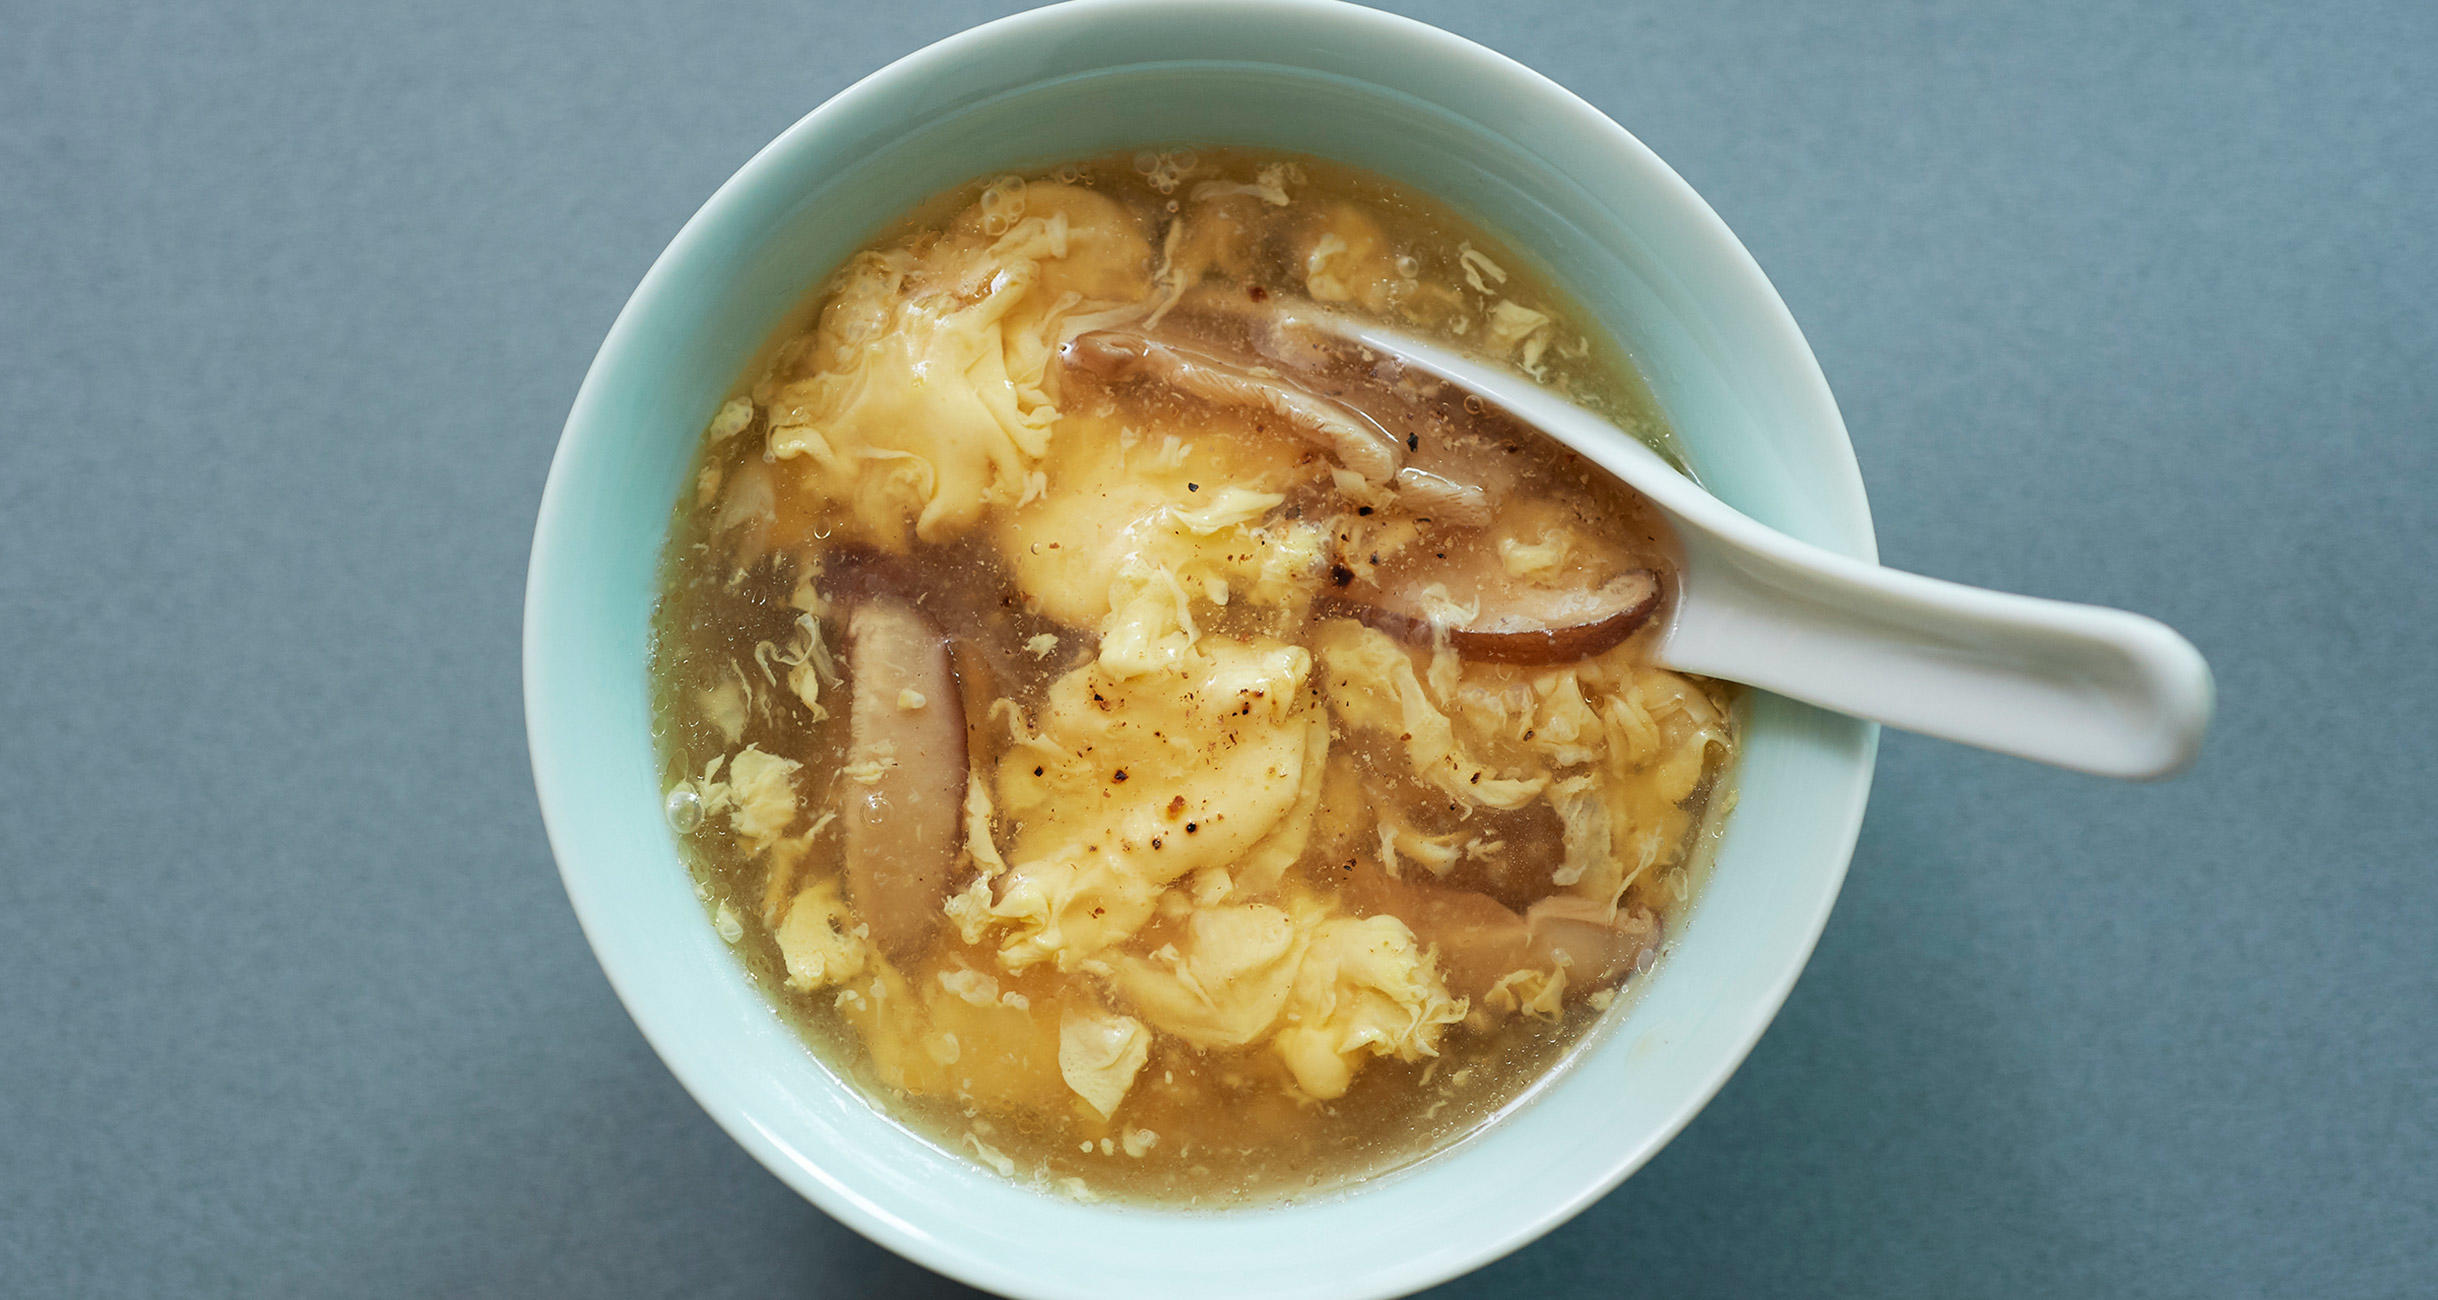 酸 辣 湯麺 レシピ